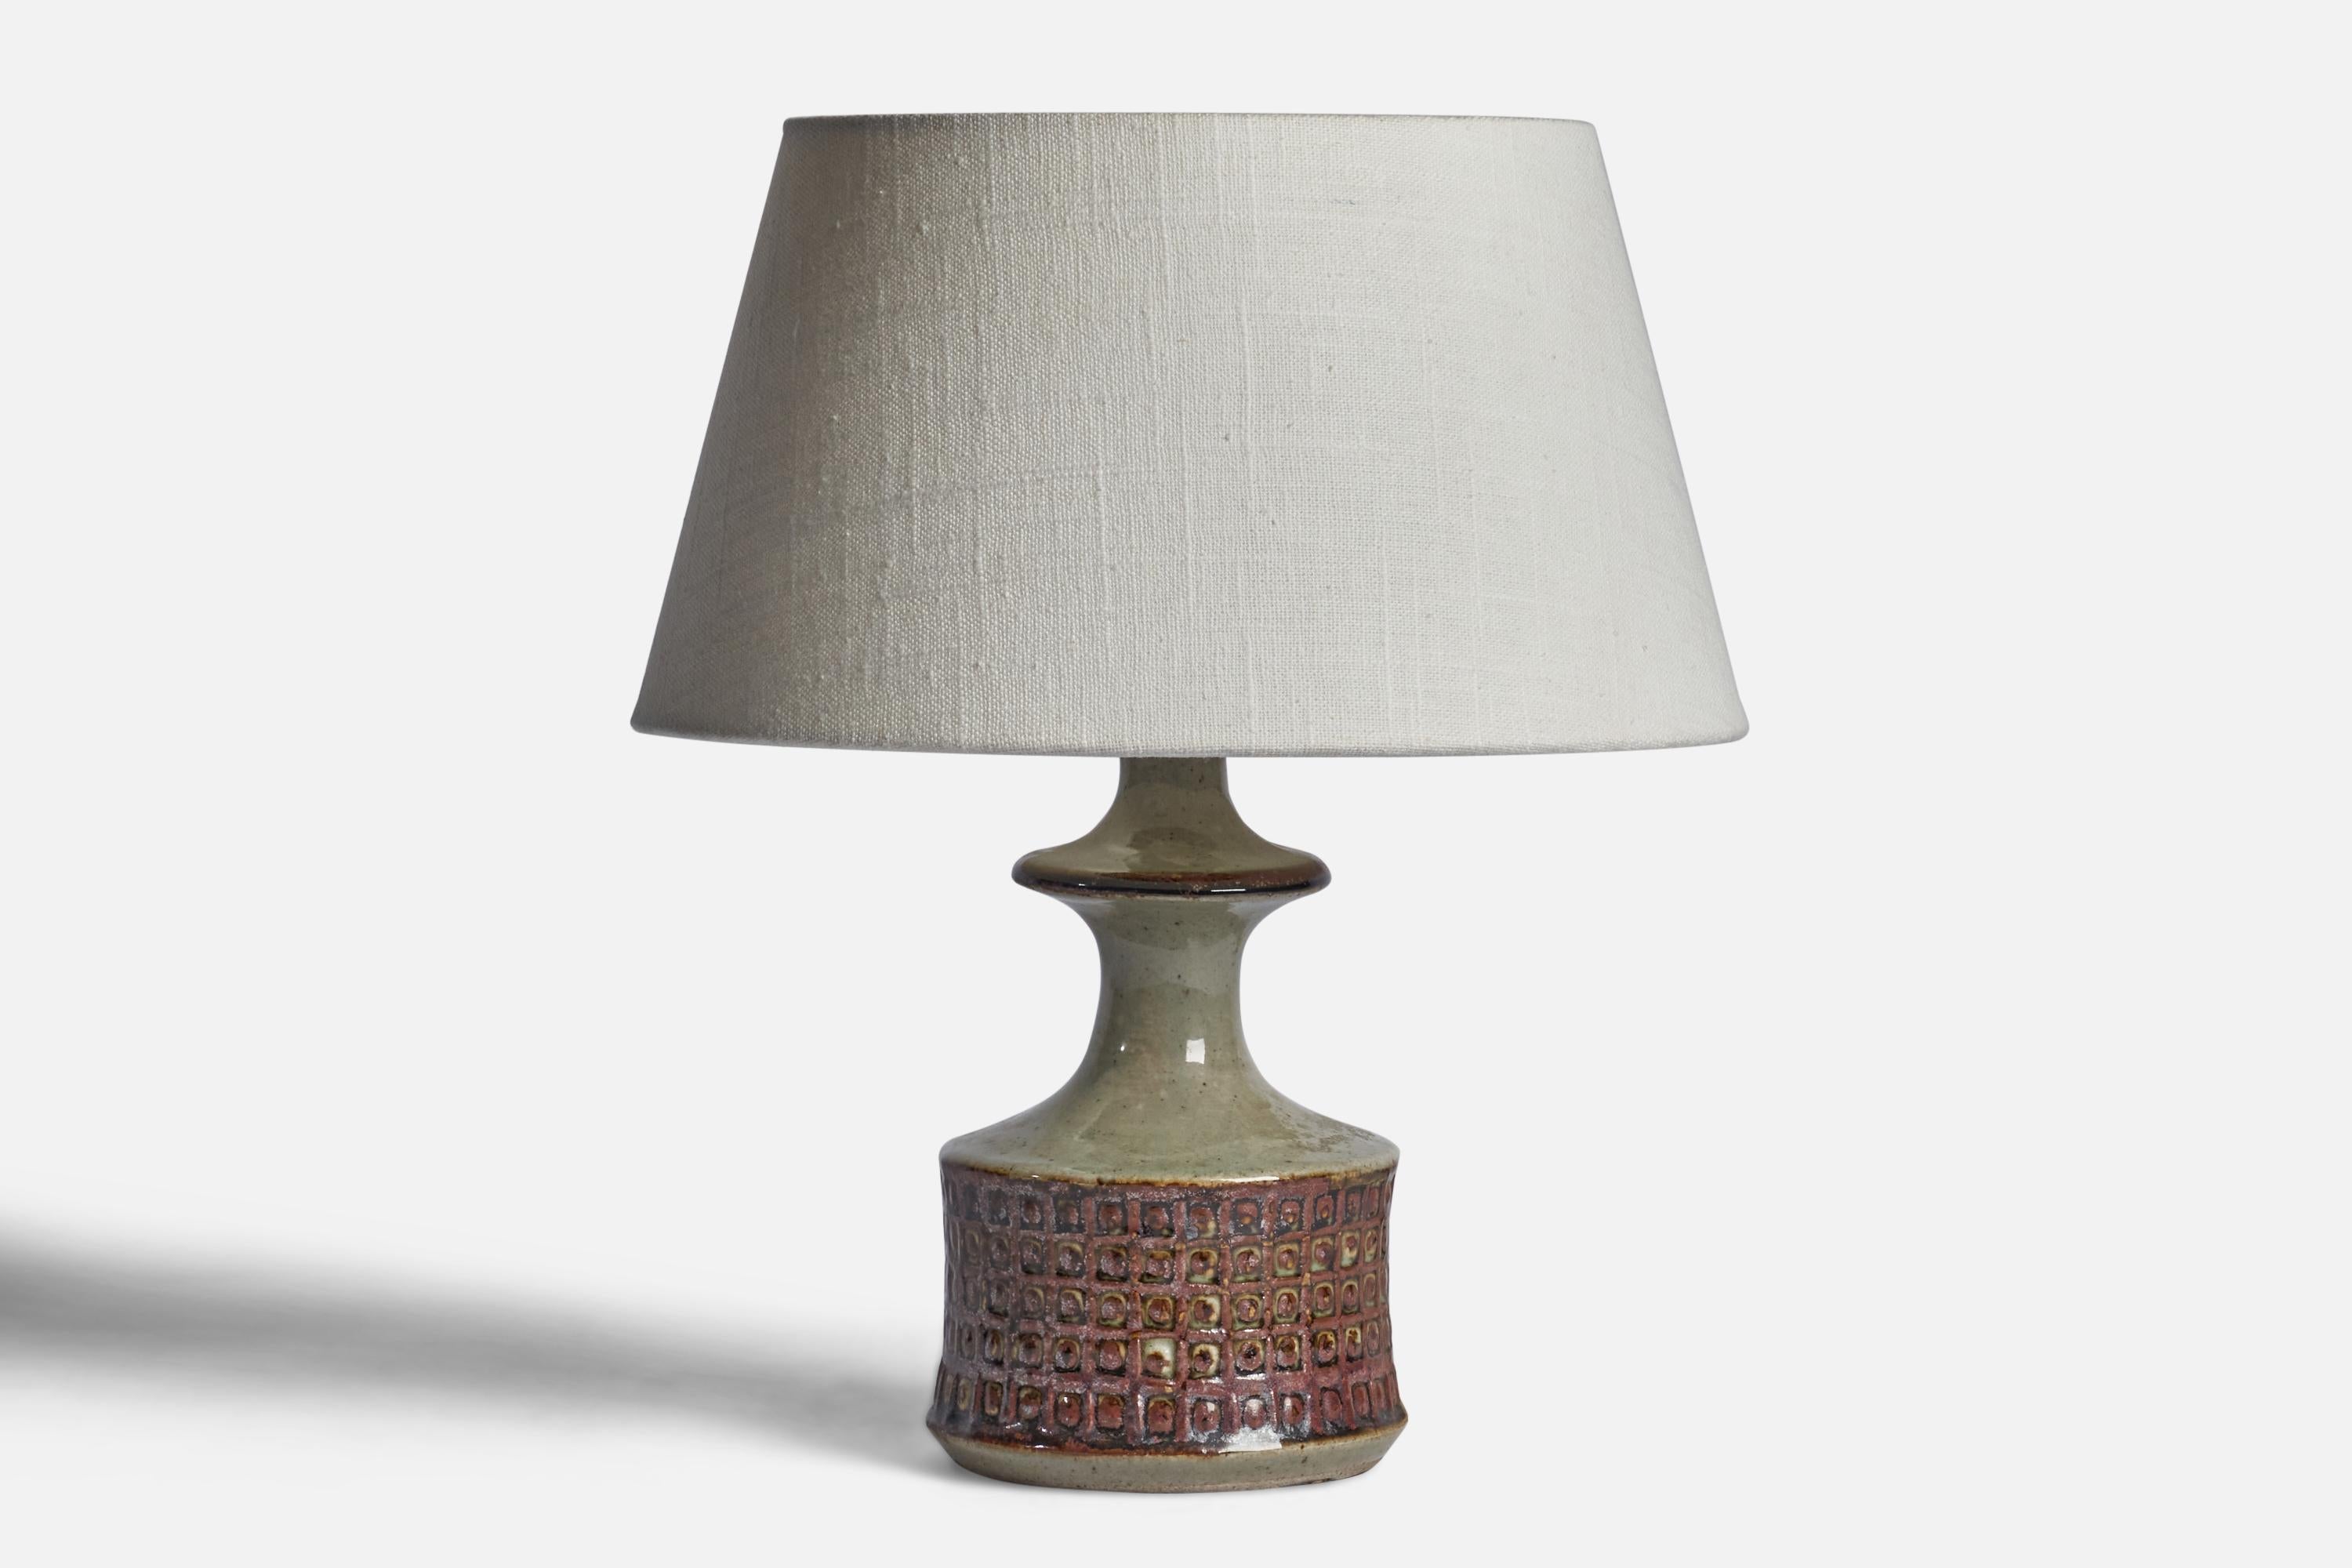 Lampe de table en grès émaillé brun et gris, conçue et produite par 
Søholm, Bornholm, Danemark, c. 1960.

Dimensions de la lampe (pouces) : 9.45